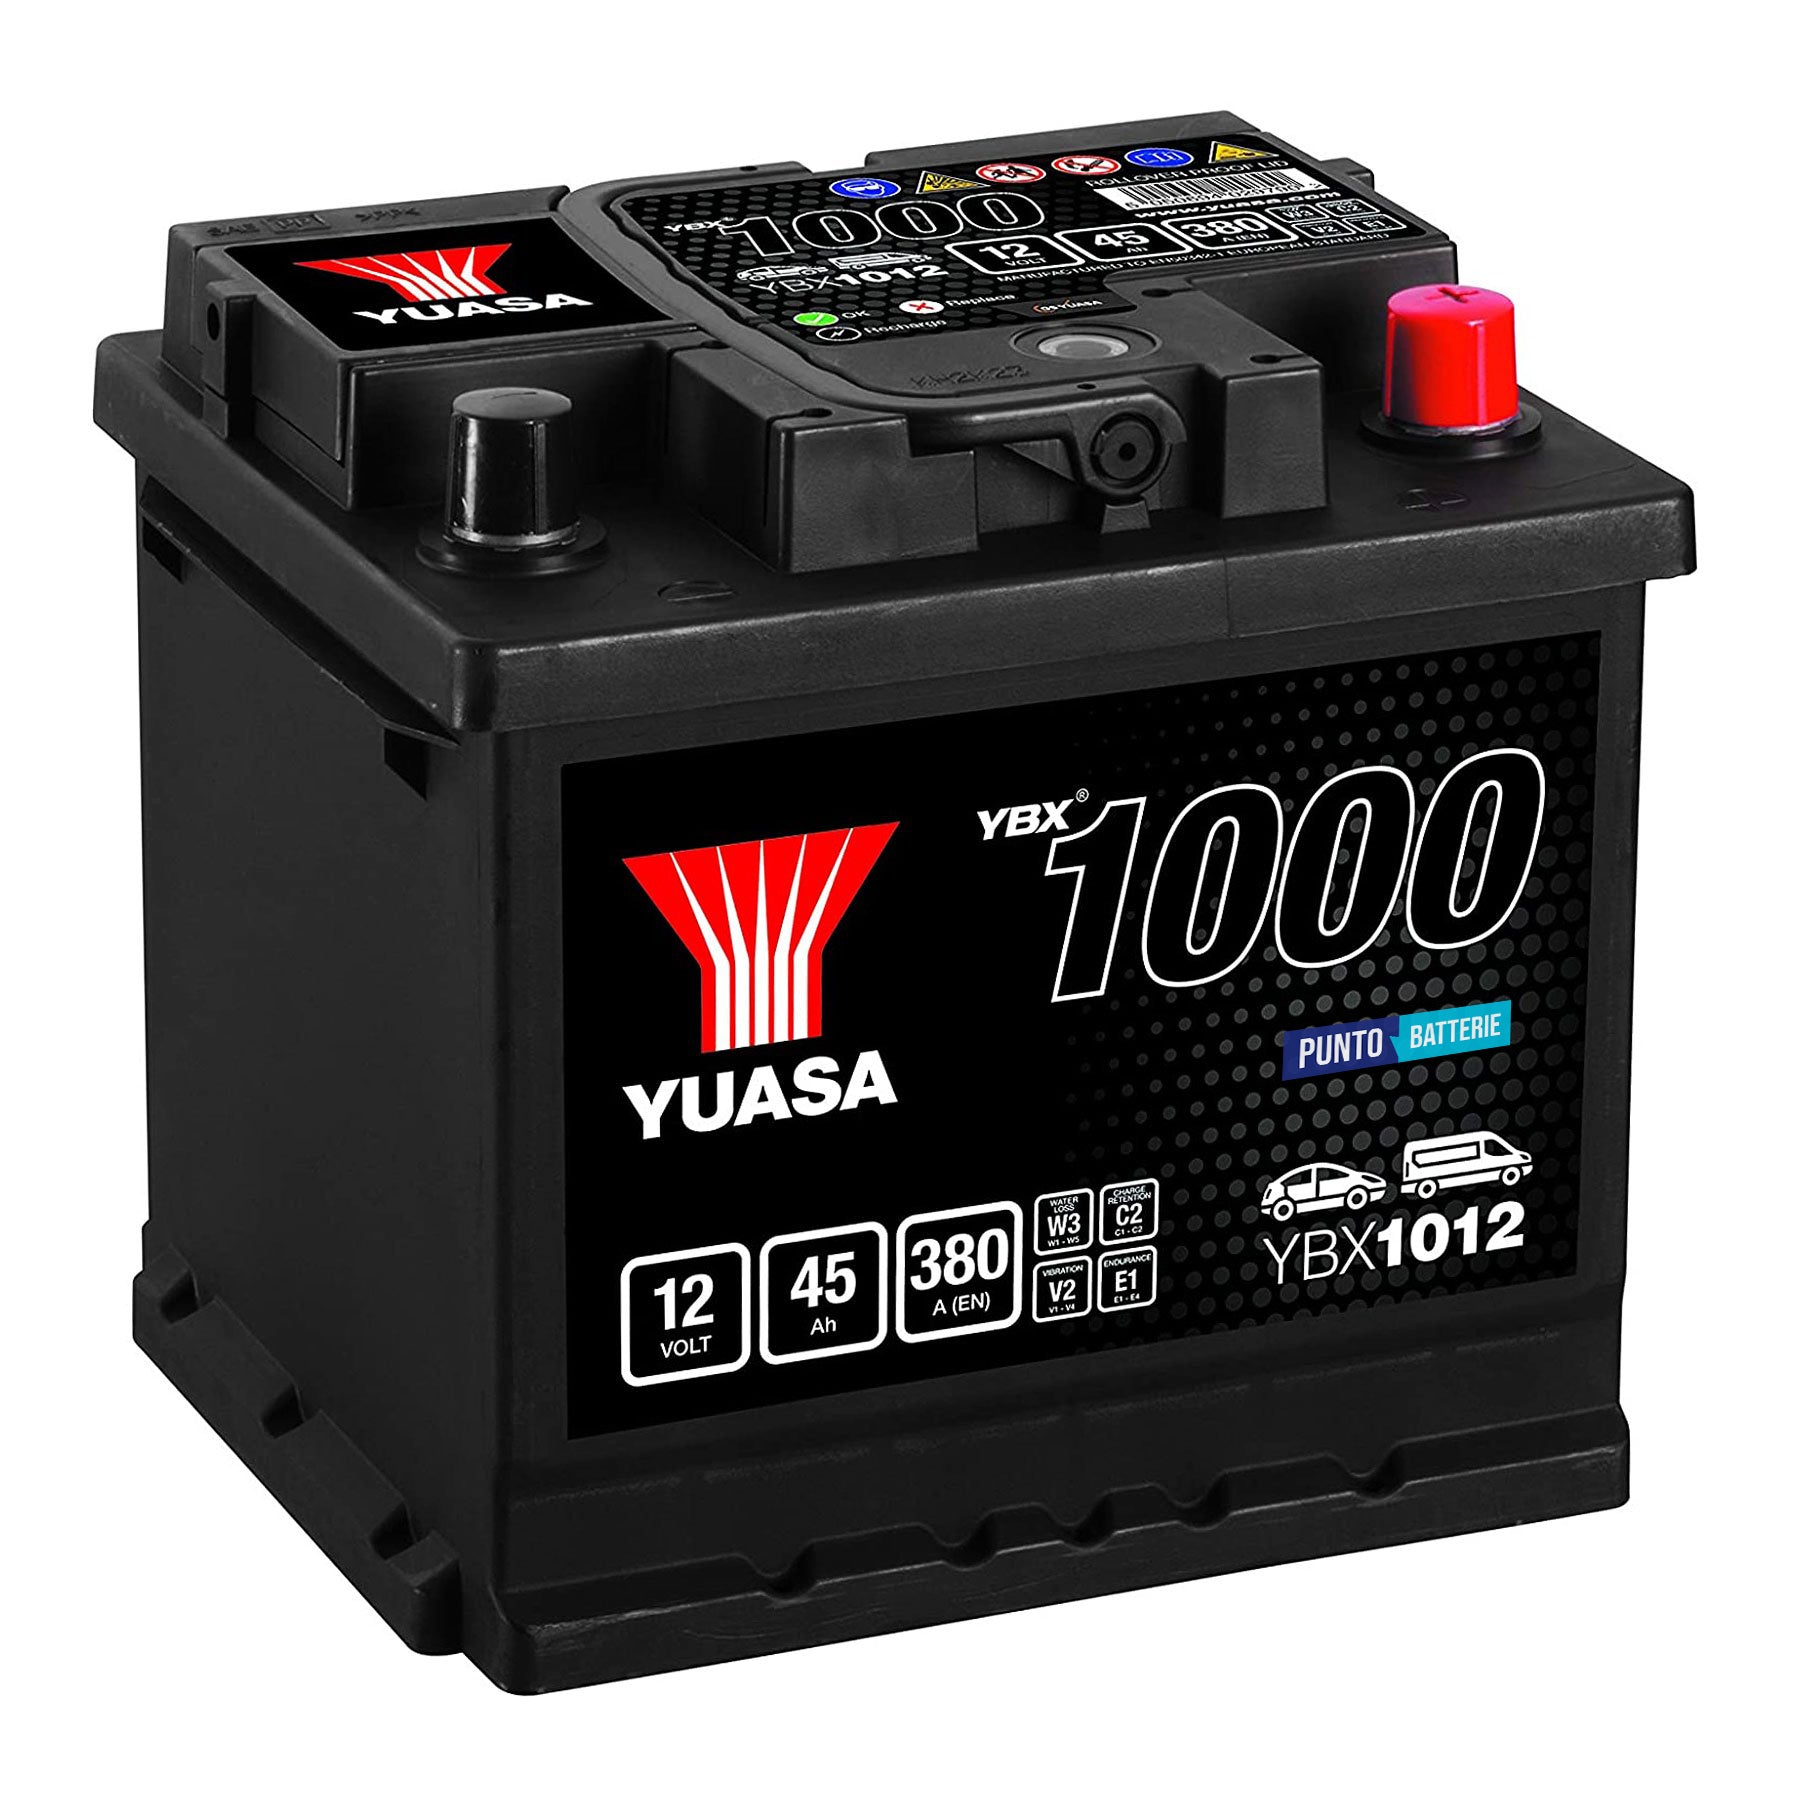 Batteria originale Yuasa YBX1000 YBX1012, dimensioni 207 x 175 x 190, polo positivo a destra, 12 volt, 45 amperora, 380 ampere. Batteria per auto e veicoli leggeri.